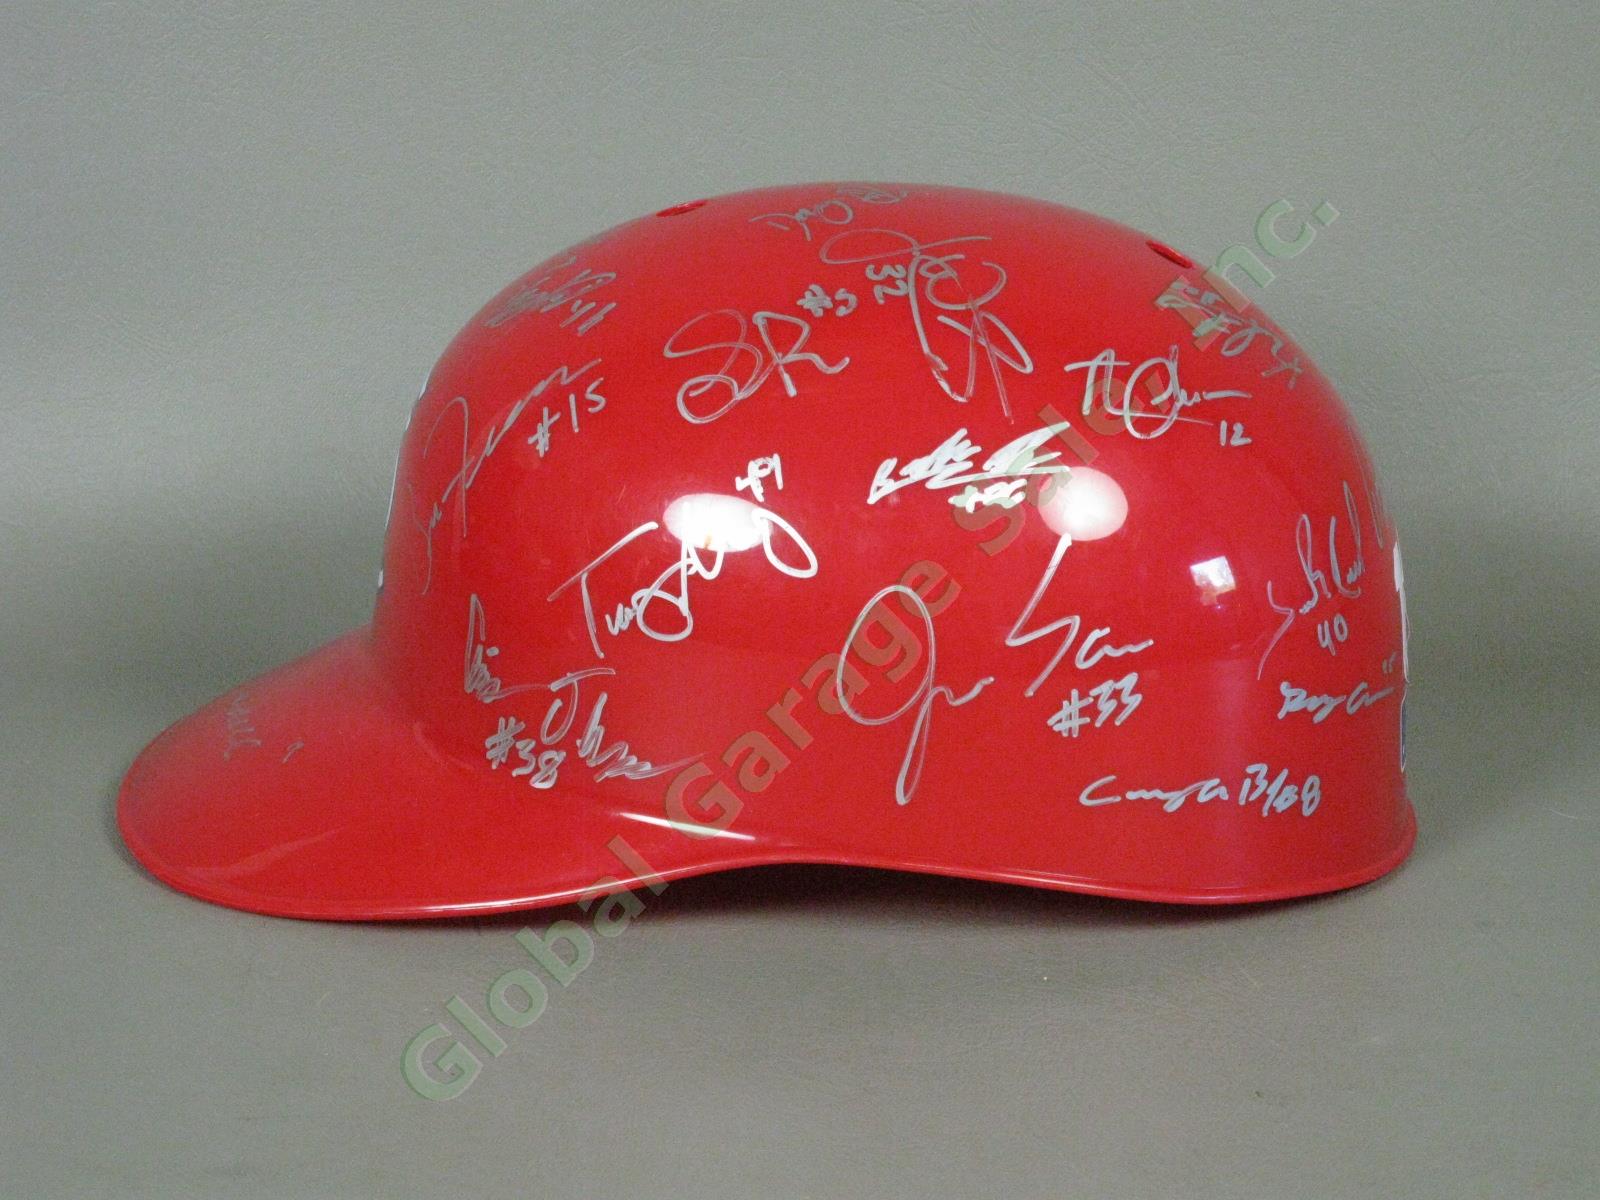 2012 Batavia Muckdogs Team Signed Baseball Helmet NYPL St. Louis Cardinals NR 3